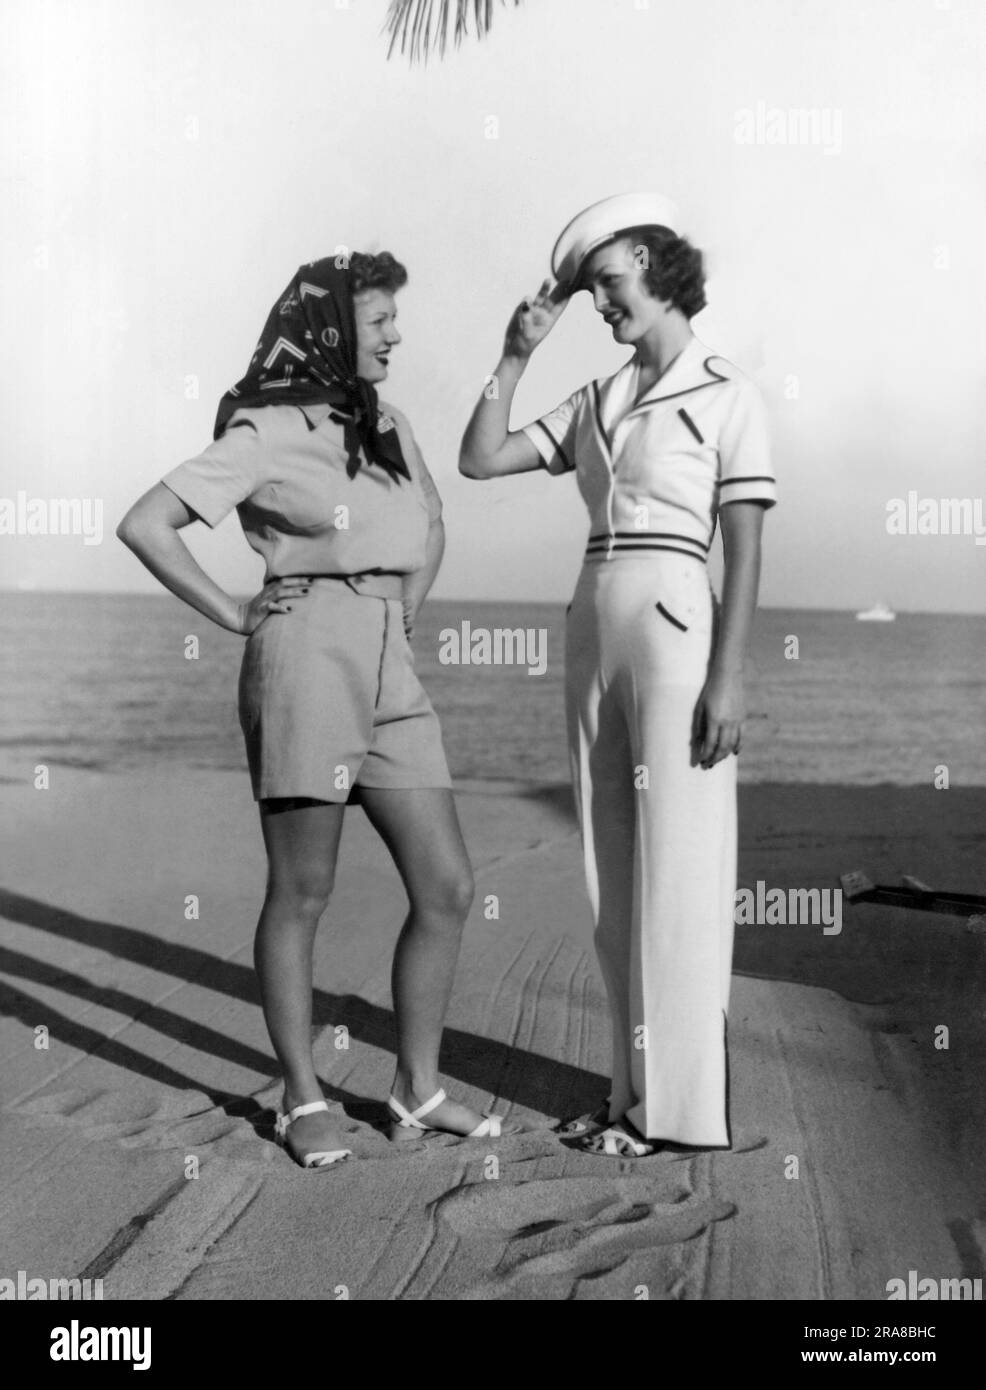 Miami Beach, Floride: c. 1937 deux femmes au Surf Club modèle le plus récent dans les vêtements de bain de plage. Banque D'Images